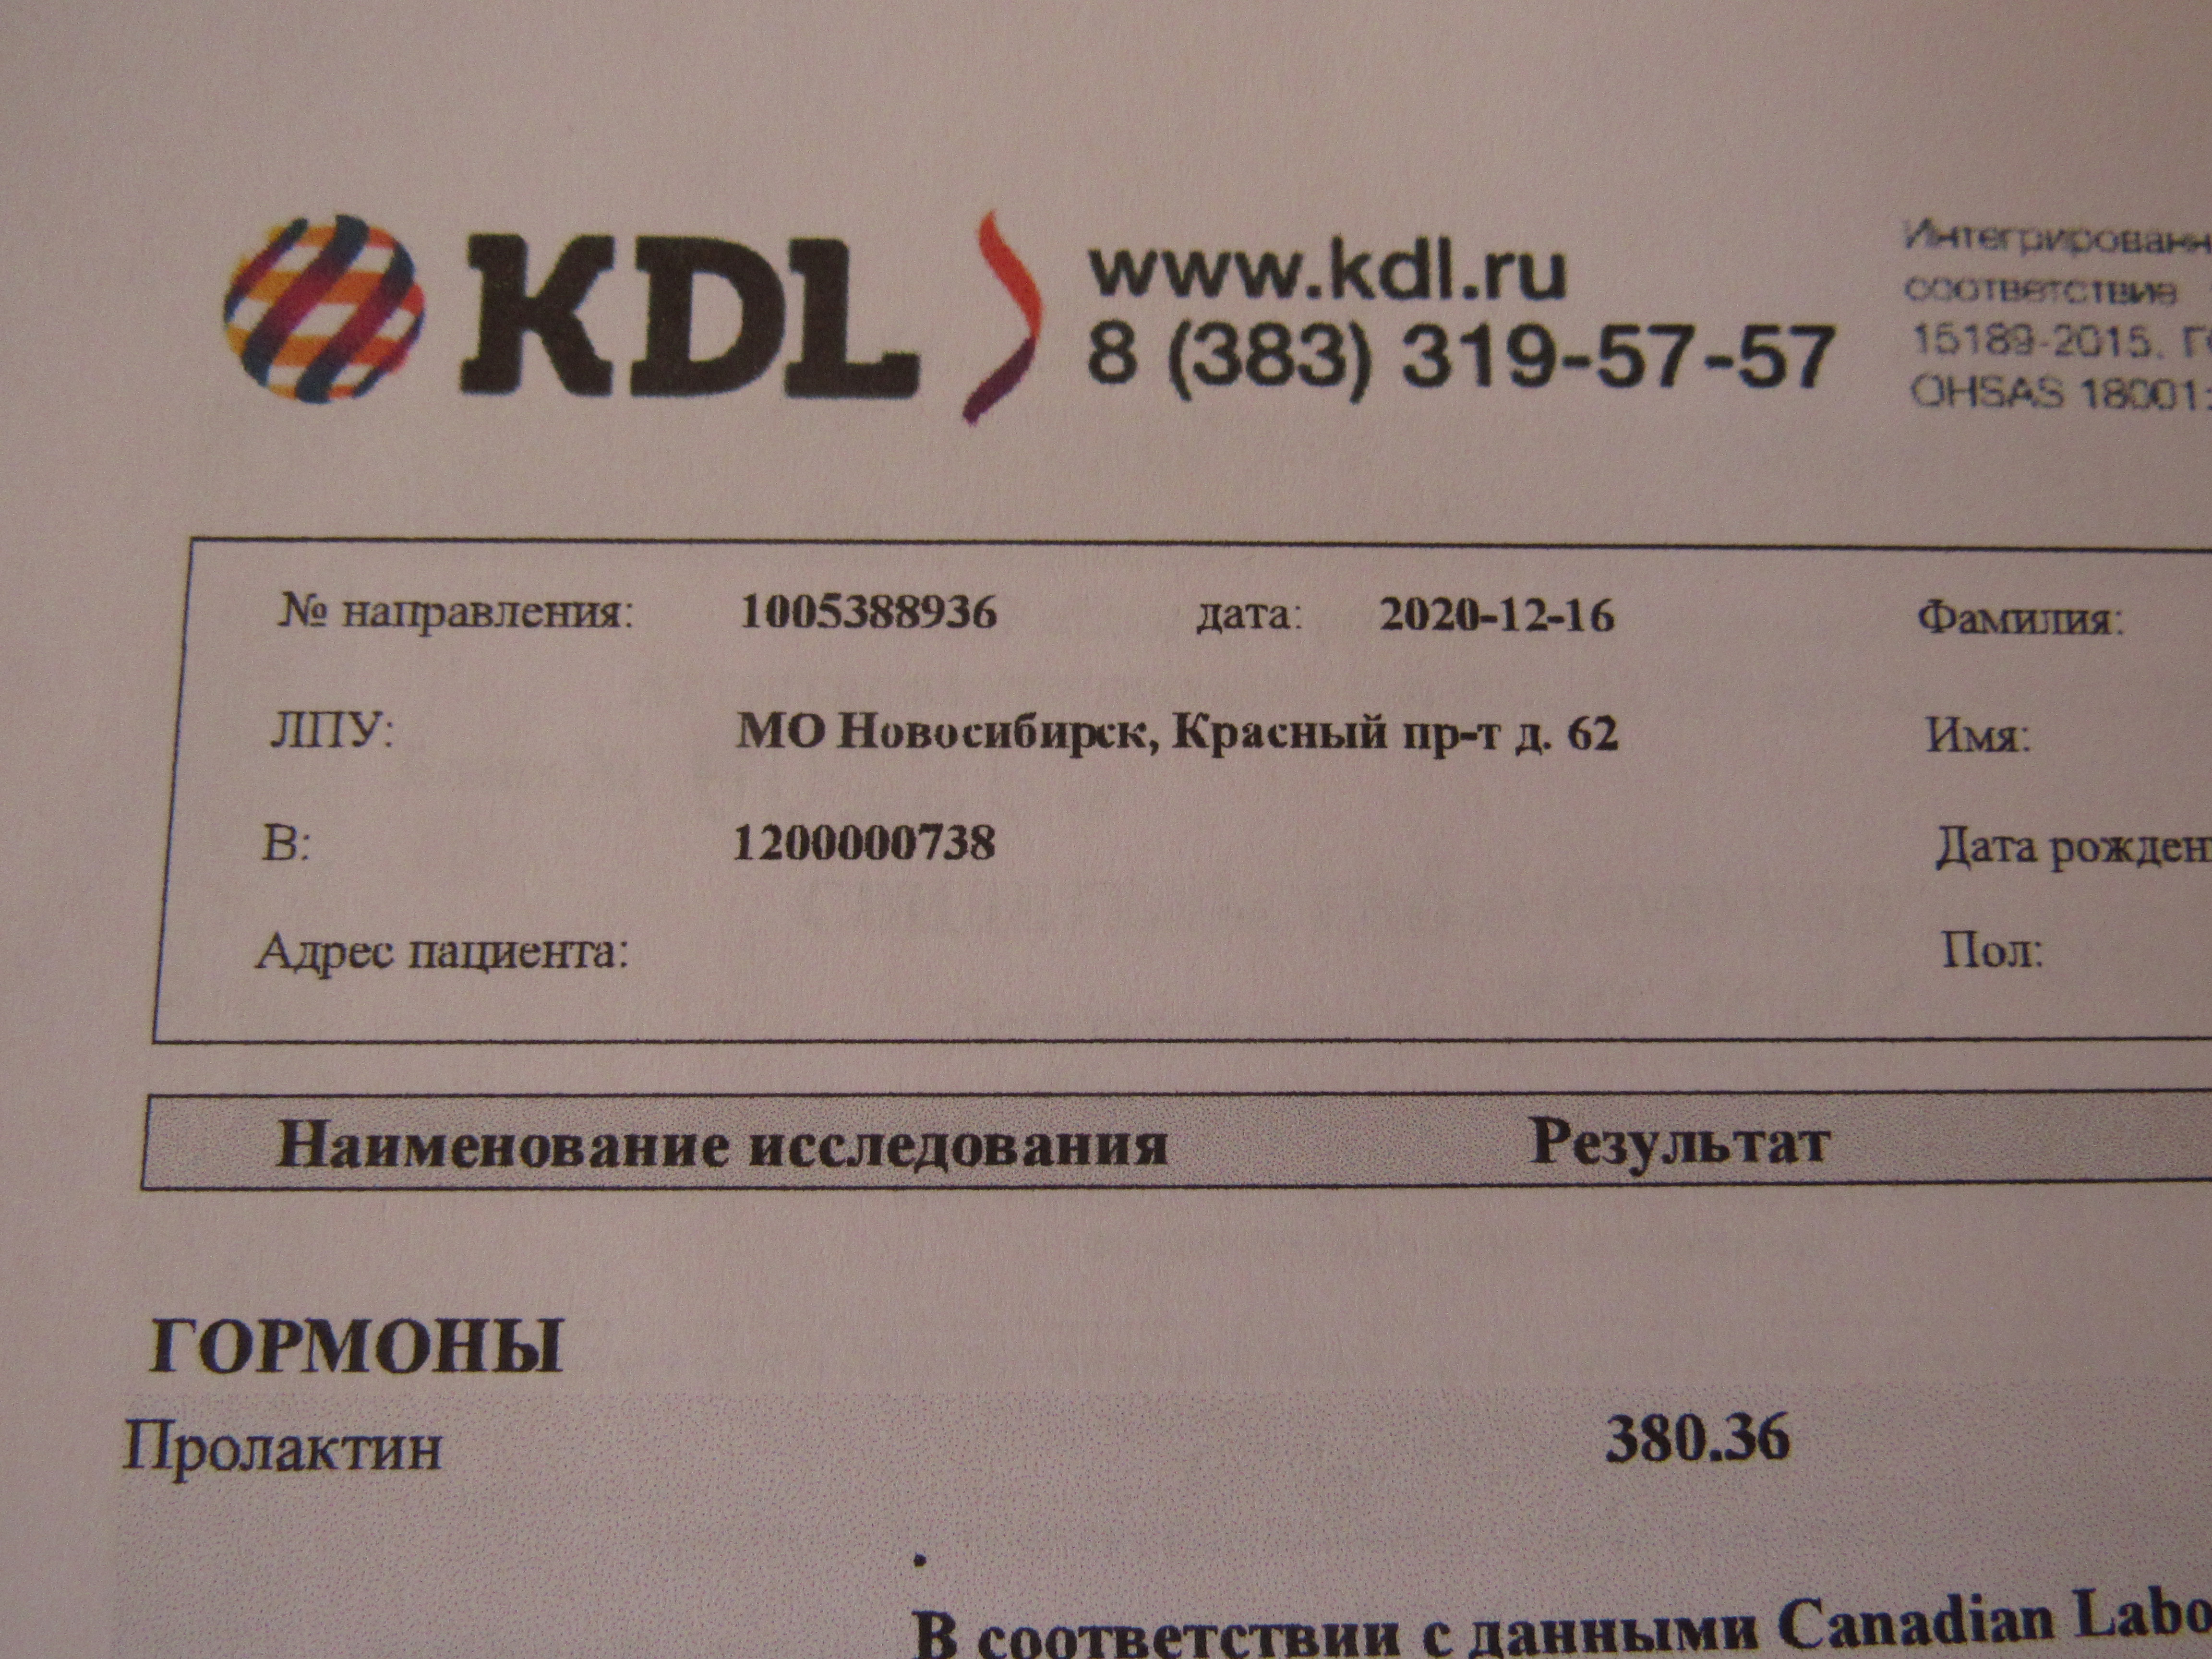 Кдл запись. KDL анализы. КДЛ лаборатория Новосибирск. KDL лаборатория Барнаул. Исследования в КДЛ.